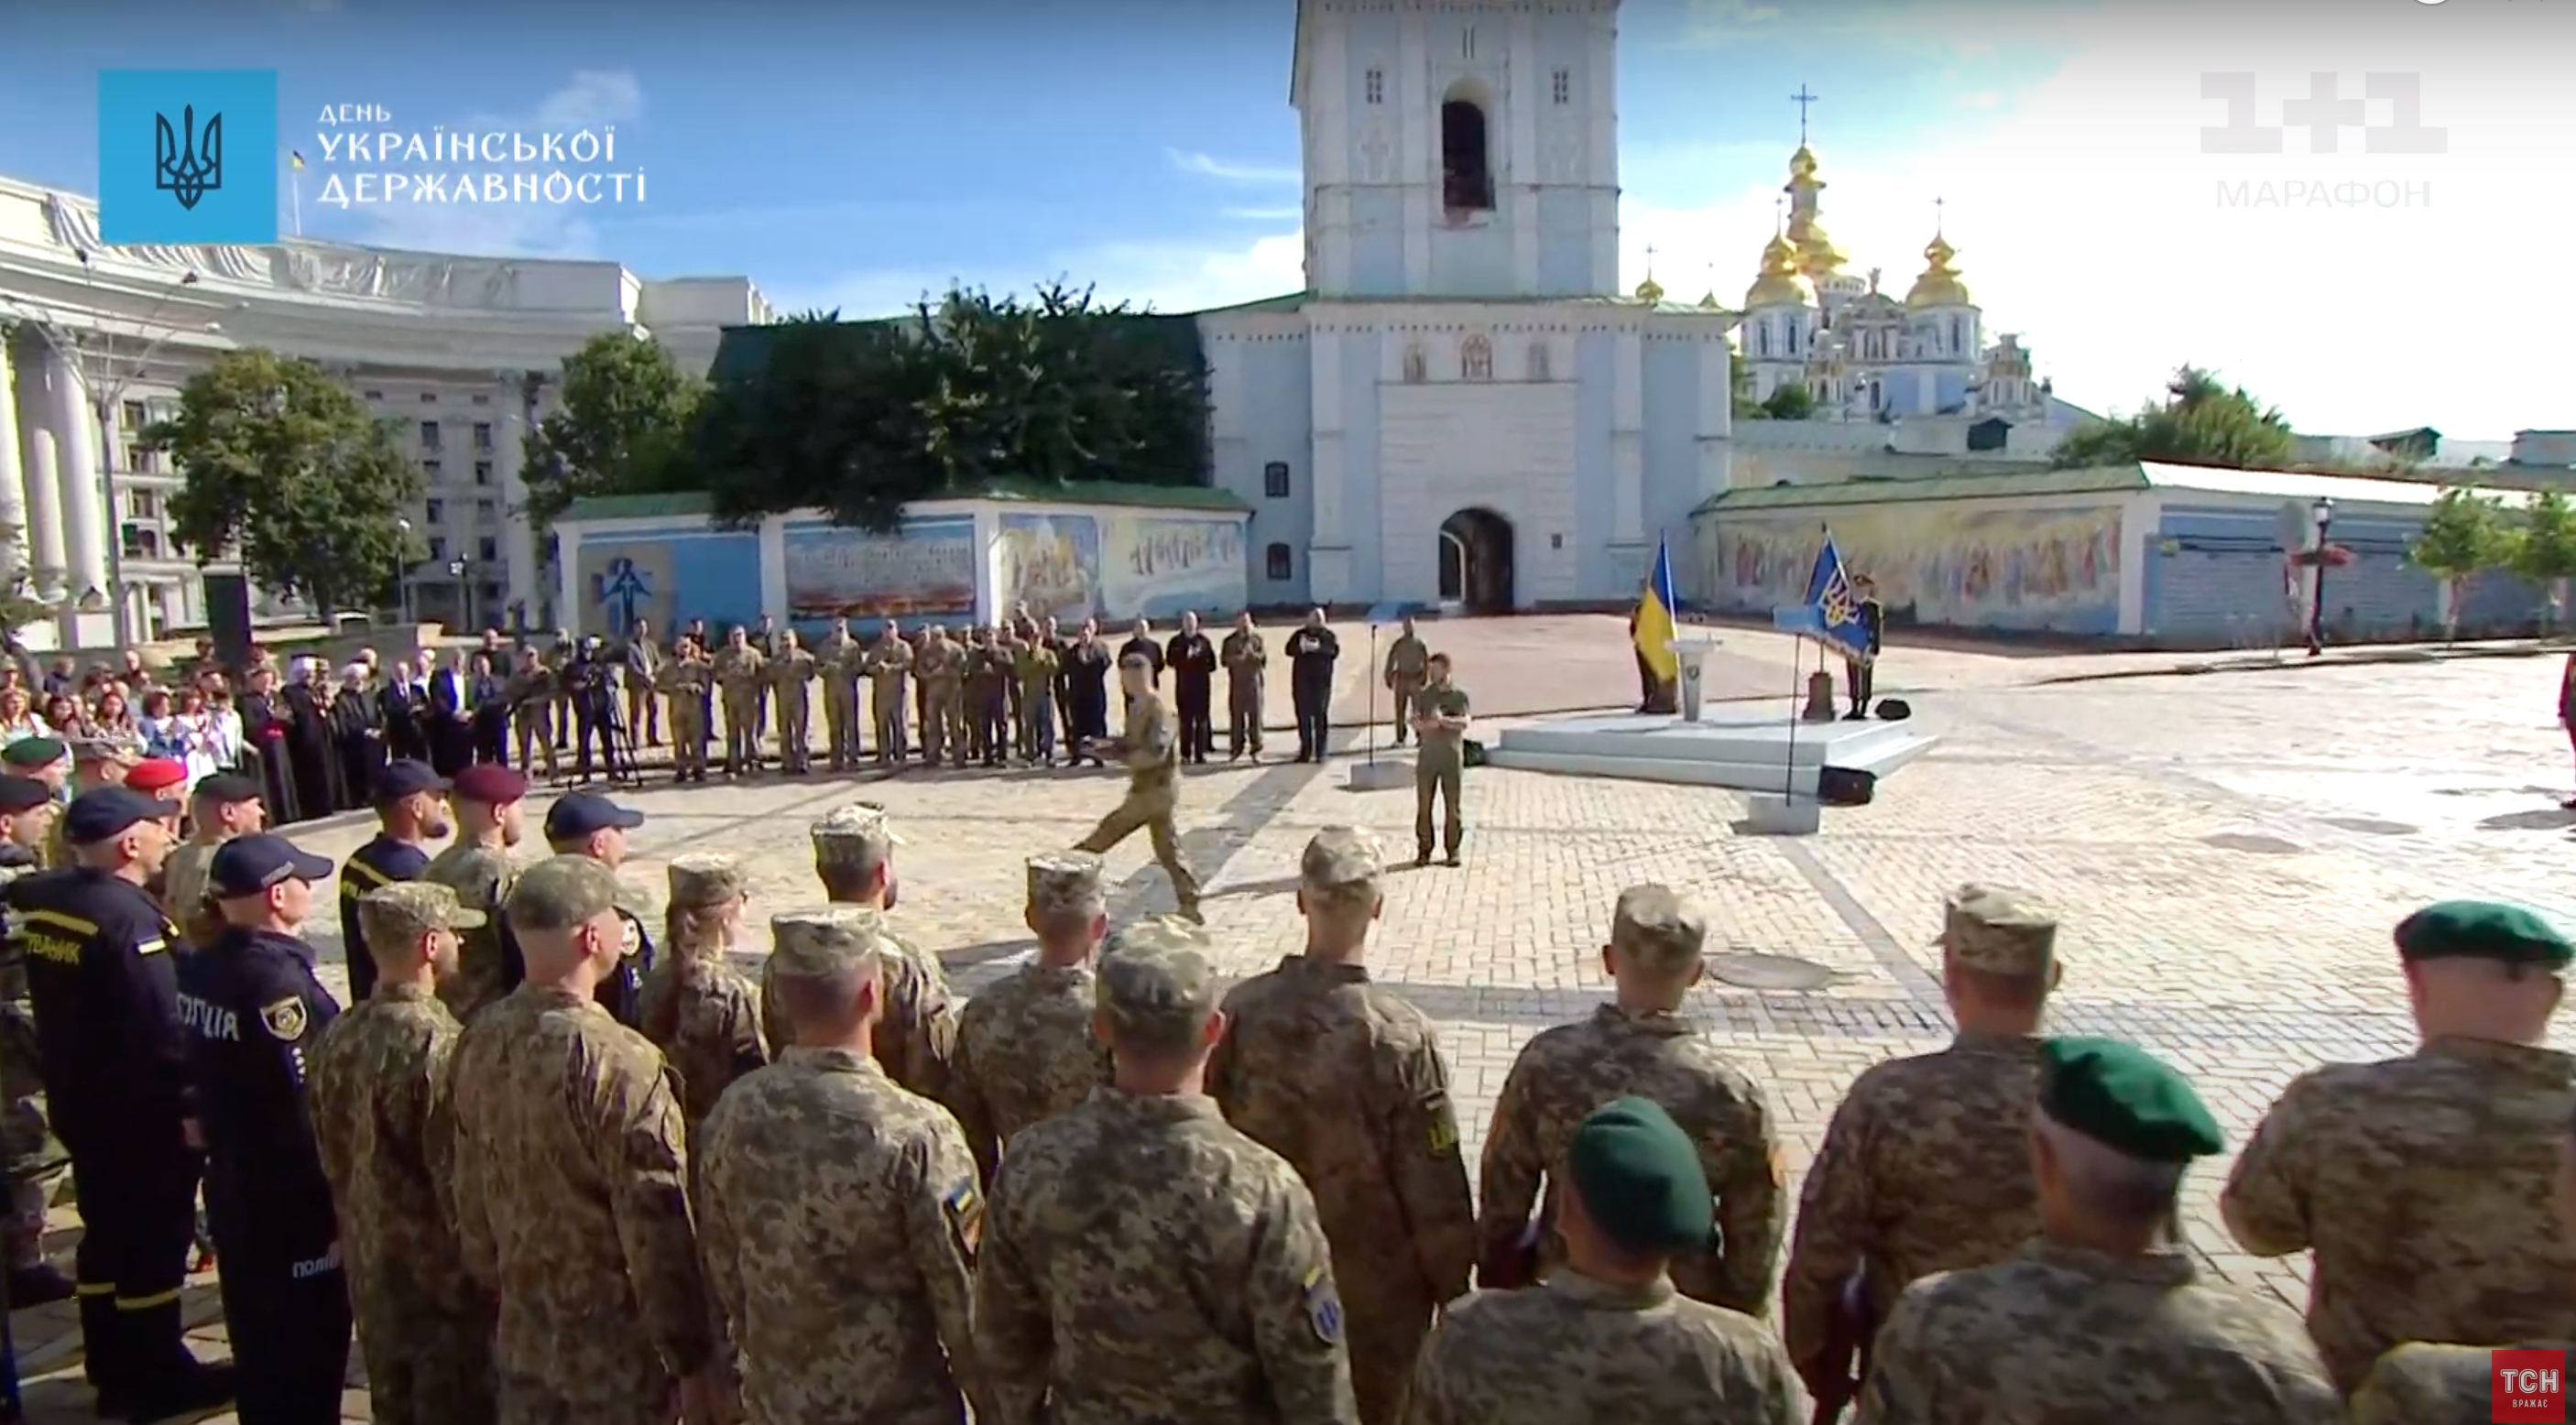 В конце мероприятия президент вручил награды украинским военным.